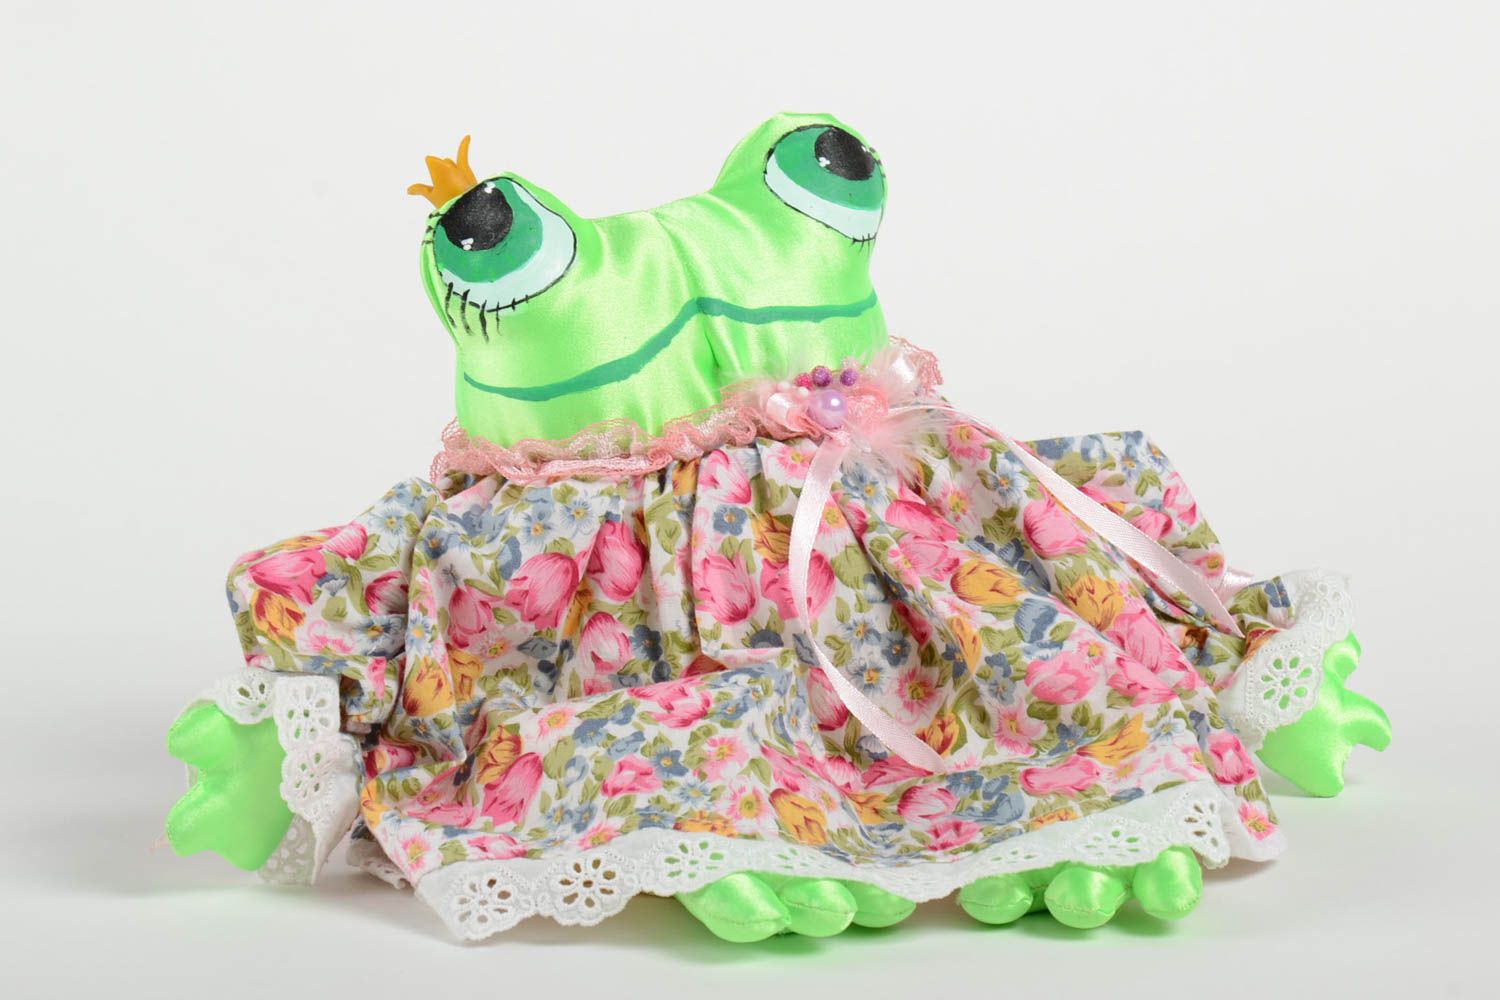 Handmade Frosch Stofftier Kinder Spielzeug Geschenk Idee klein bunt originell foto 2